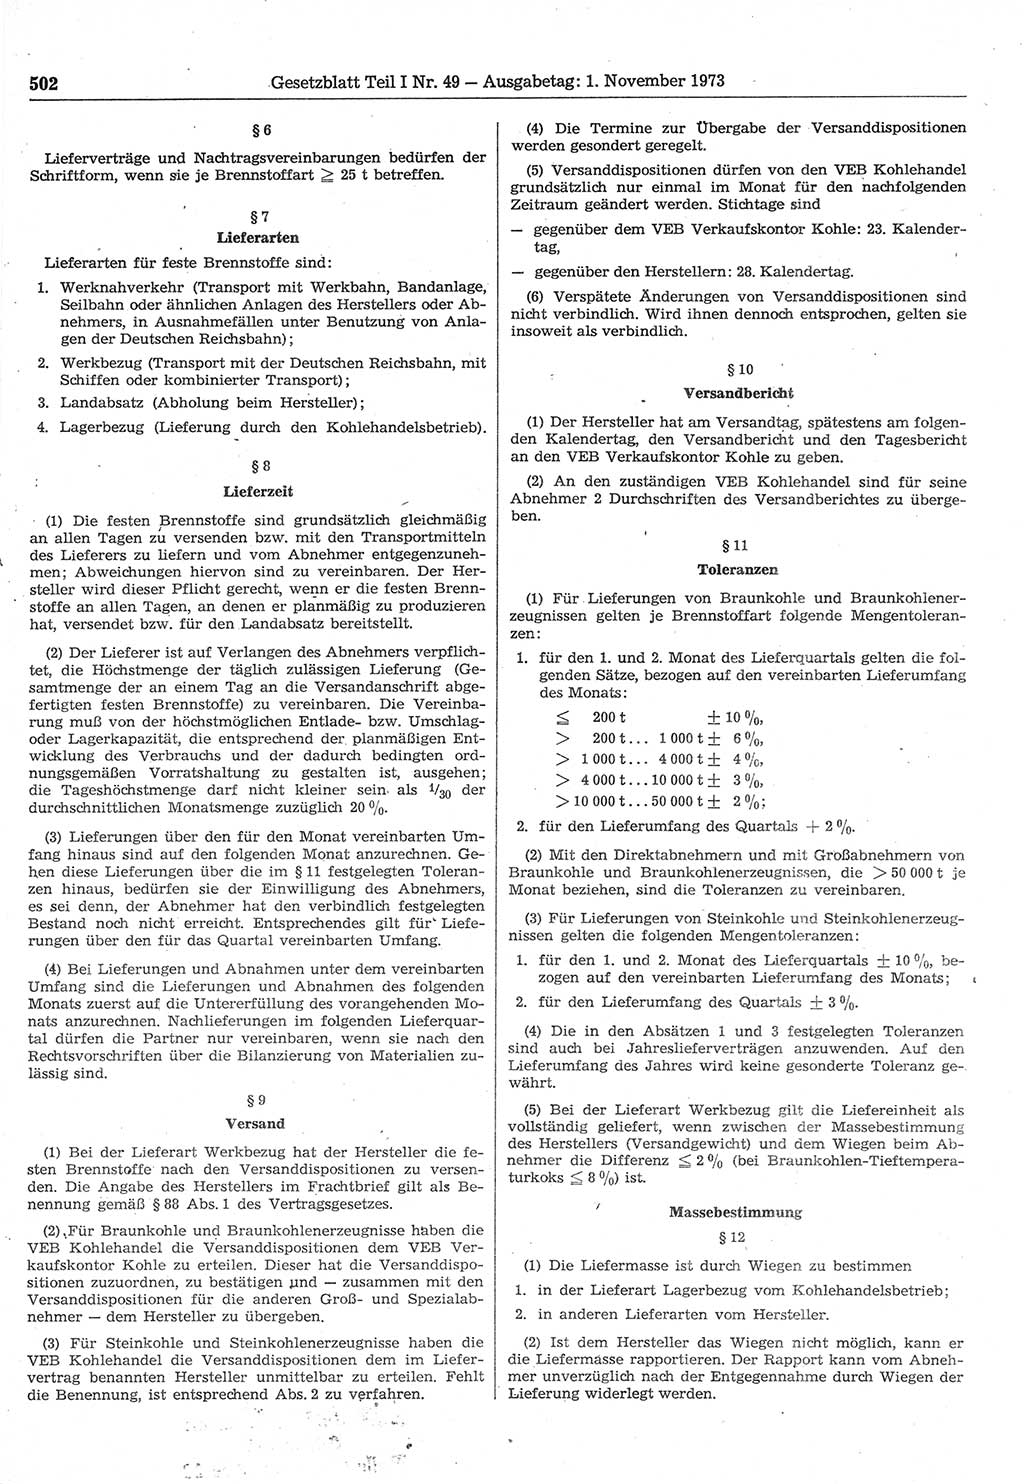 Gesetzblatt (GBl.) der Deutschen Demokratischen Republik (DDR) Teil Ⅰ 1973, Seite 502 (GBl. DDR Ⅰ 1973, S. 502)